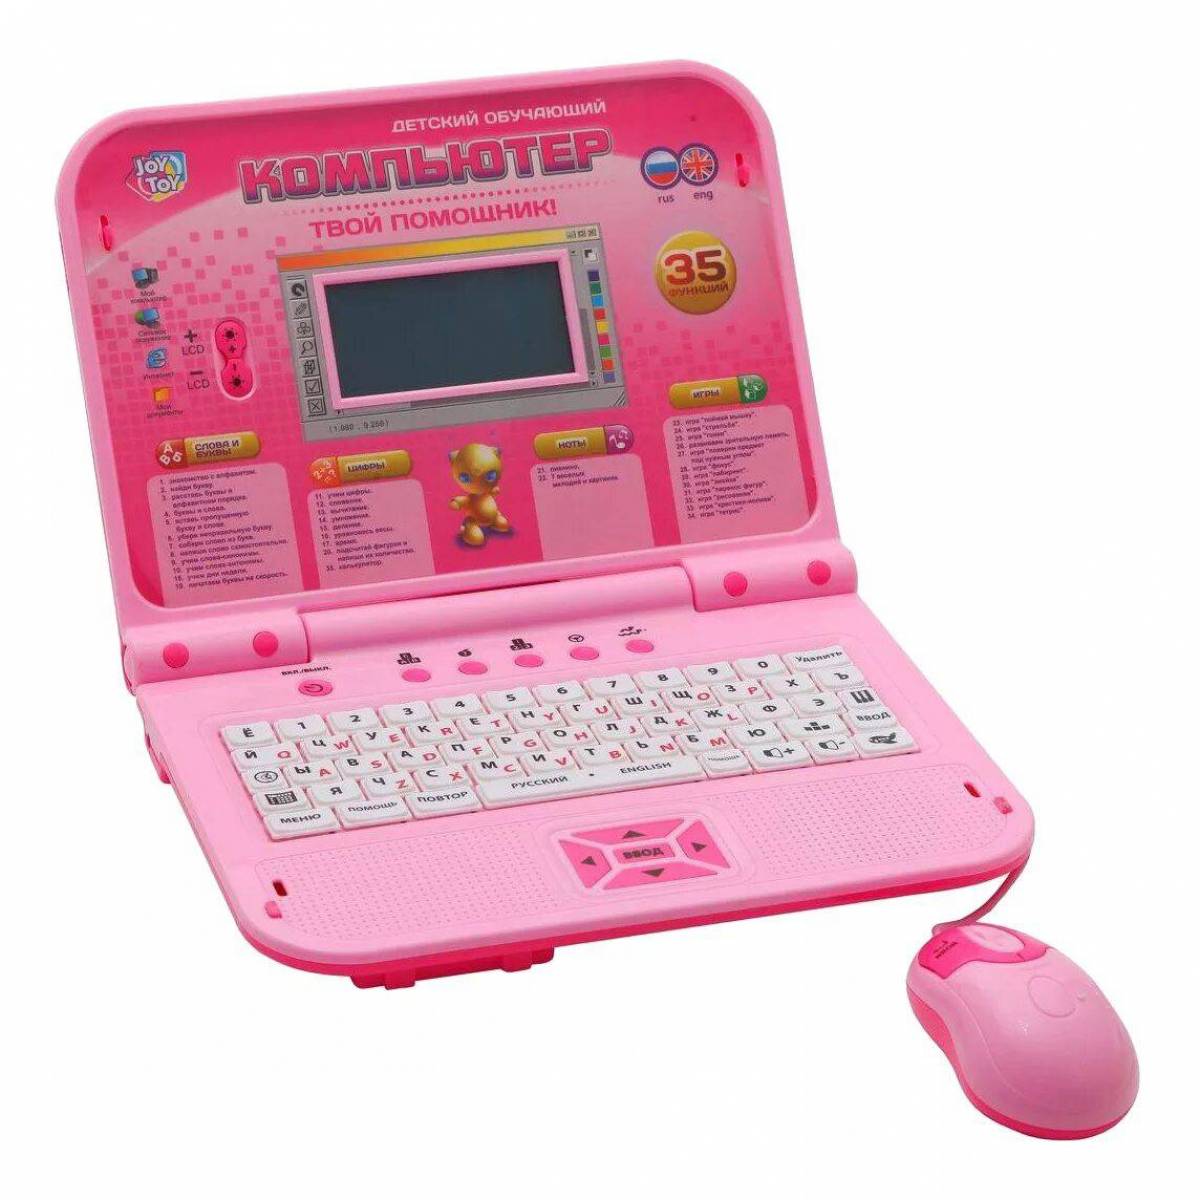 Компьютер для детей 3. Компьютер Joy Toy 7297. Обучающий компьютер Play Smart Joy Toy 7297. Ноутбук обучающий Joy Toy 7296. Детский компьютер Joy Toy 7160 клавиатура.